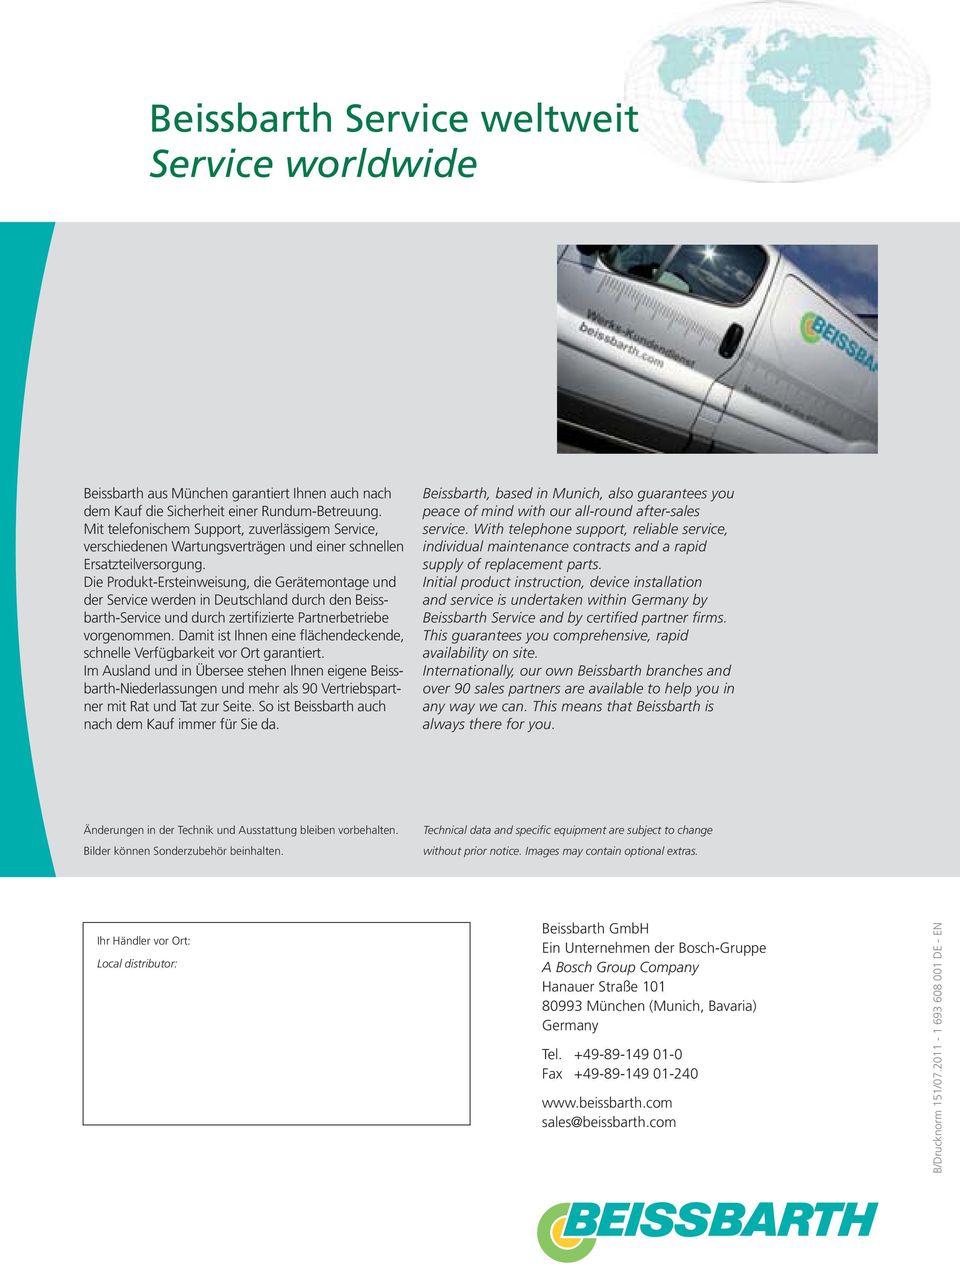 Die Produkt-Ersteinweisung, die Gerätemontage und der Service werden in Deutschland durch den Beissbarth-Service und durch zertifizierte Partnerbetriebe vorgenommen.